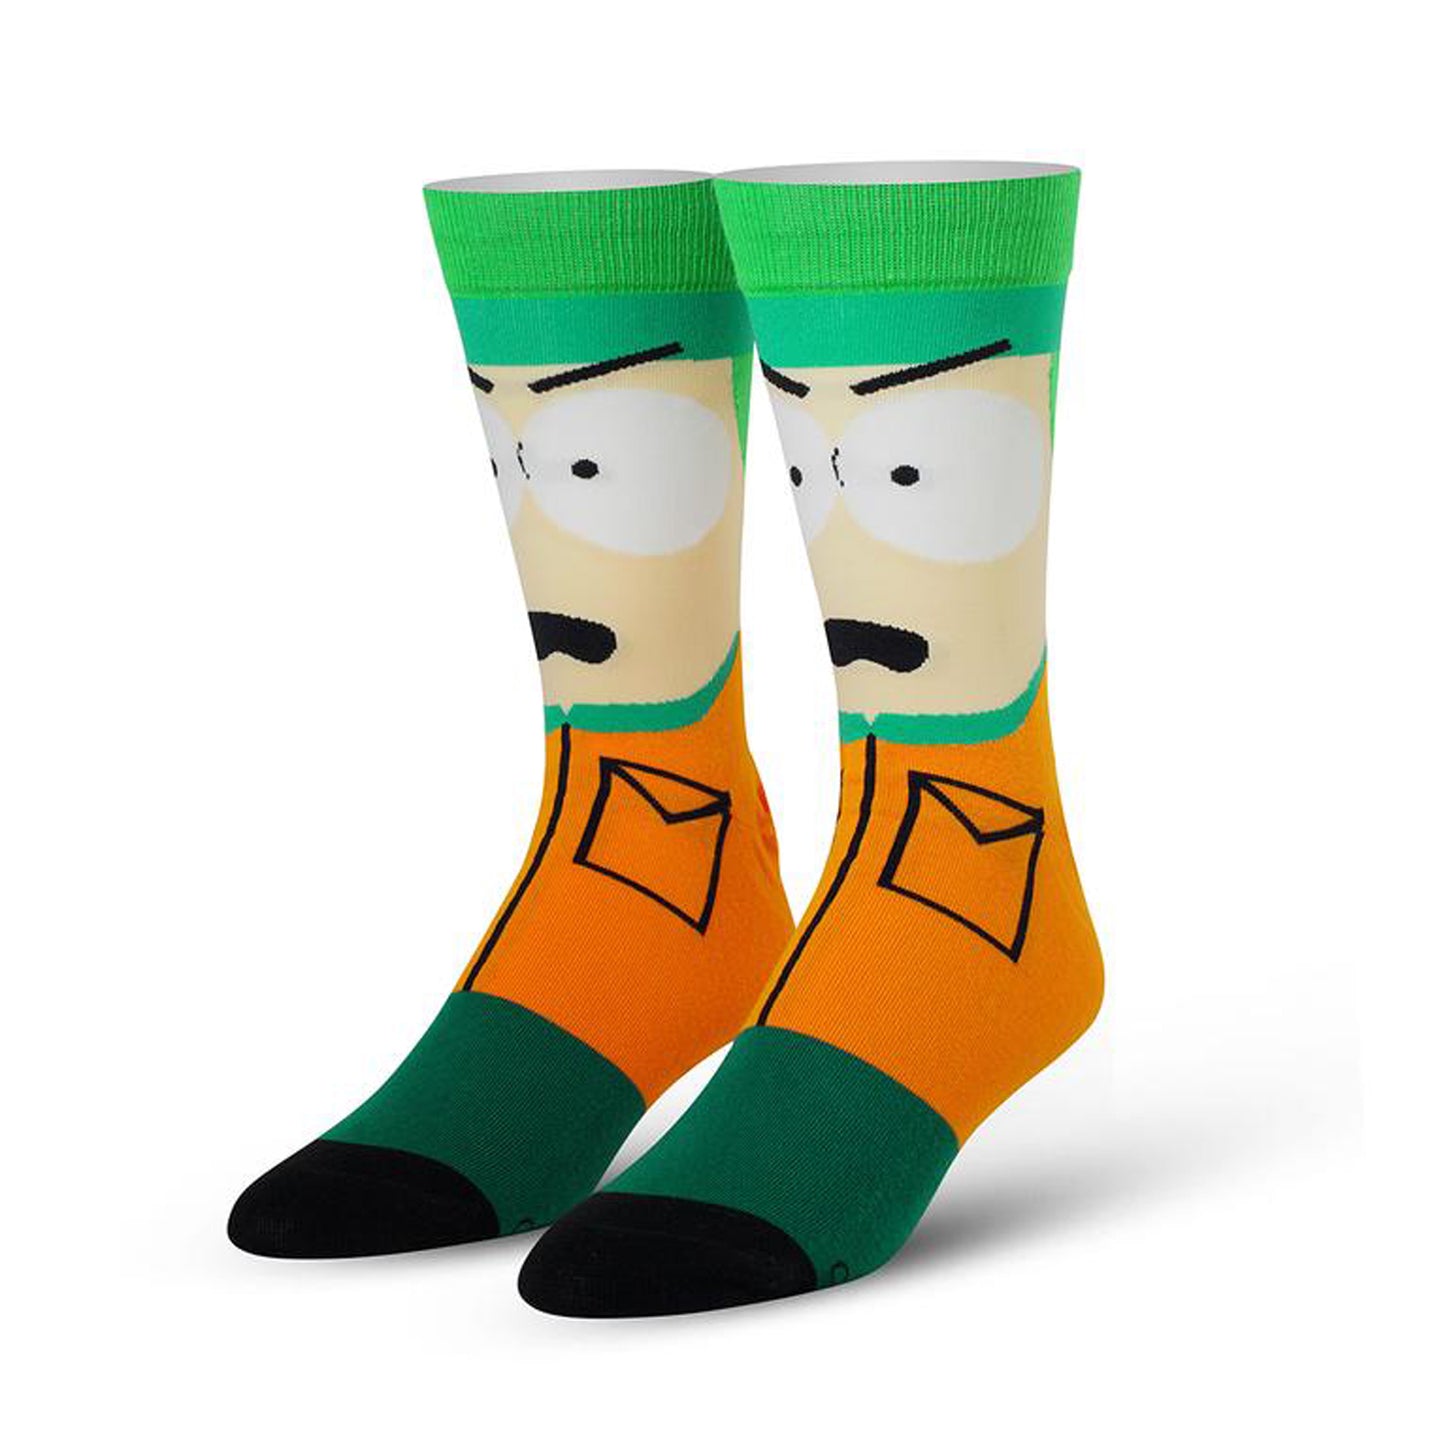 Odd Sox Men's Crew Socks - Kyle Broflovski (South Park)